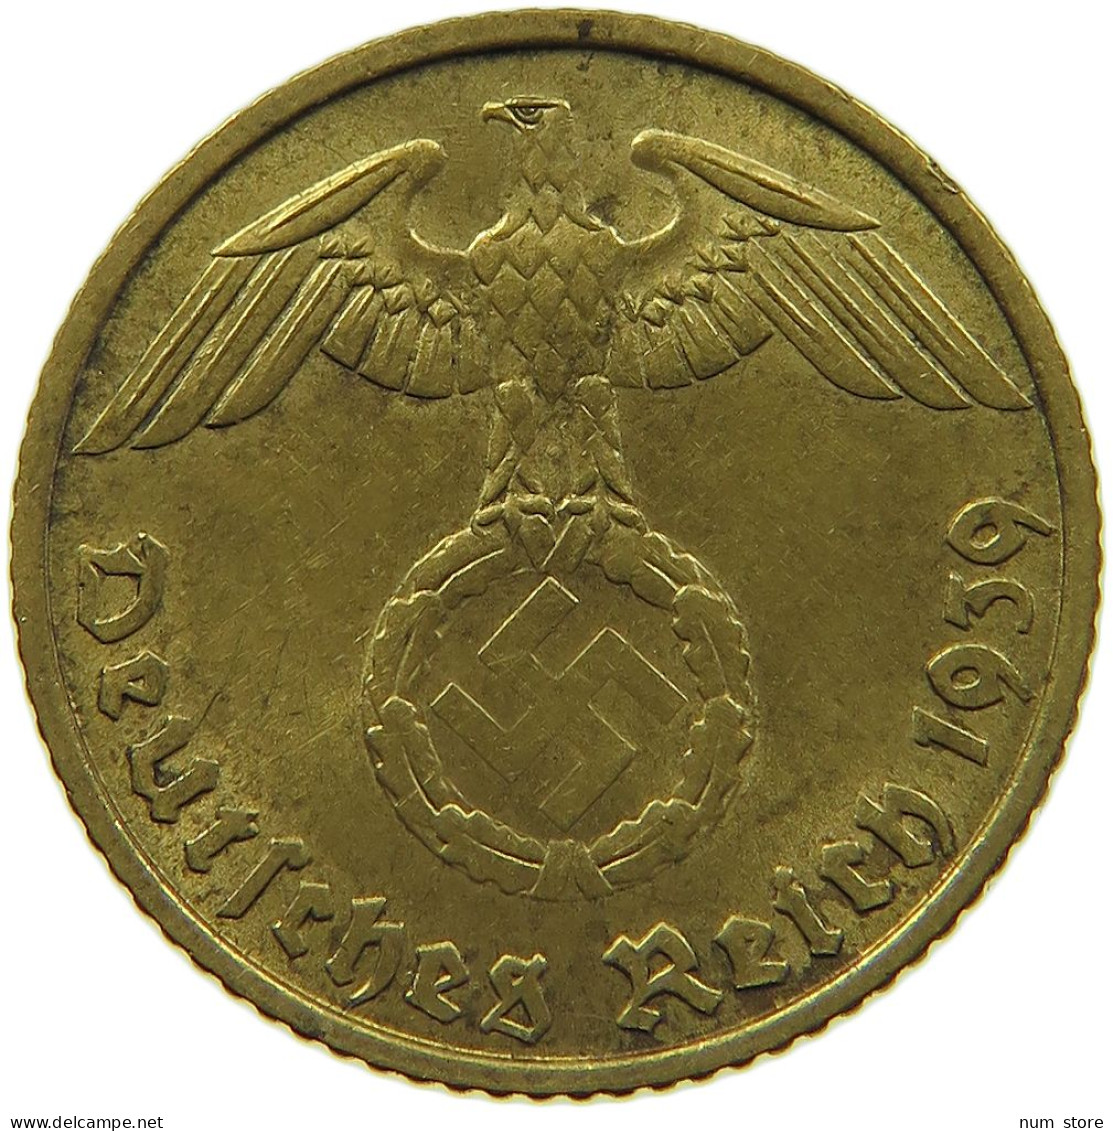 GERMANY 5 REICHSPFENNIG 1939 B #s091 0765 - 5 Reichspfennig